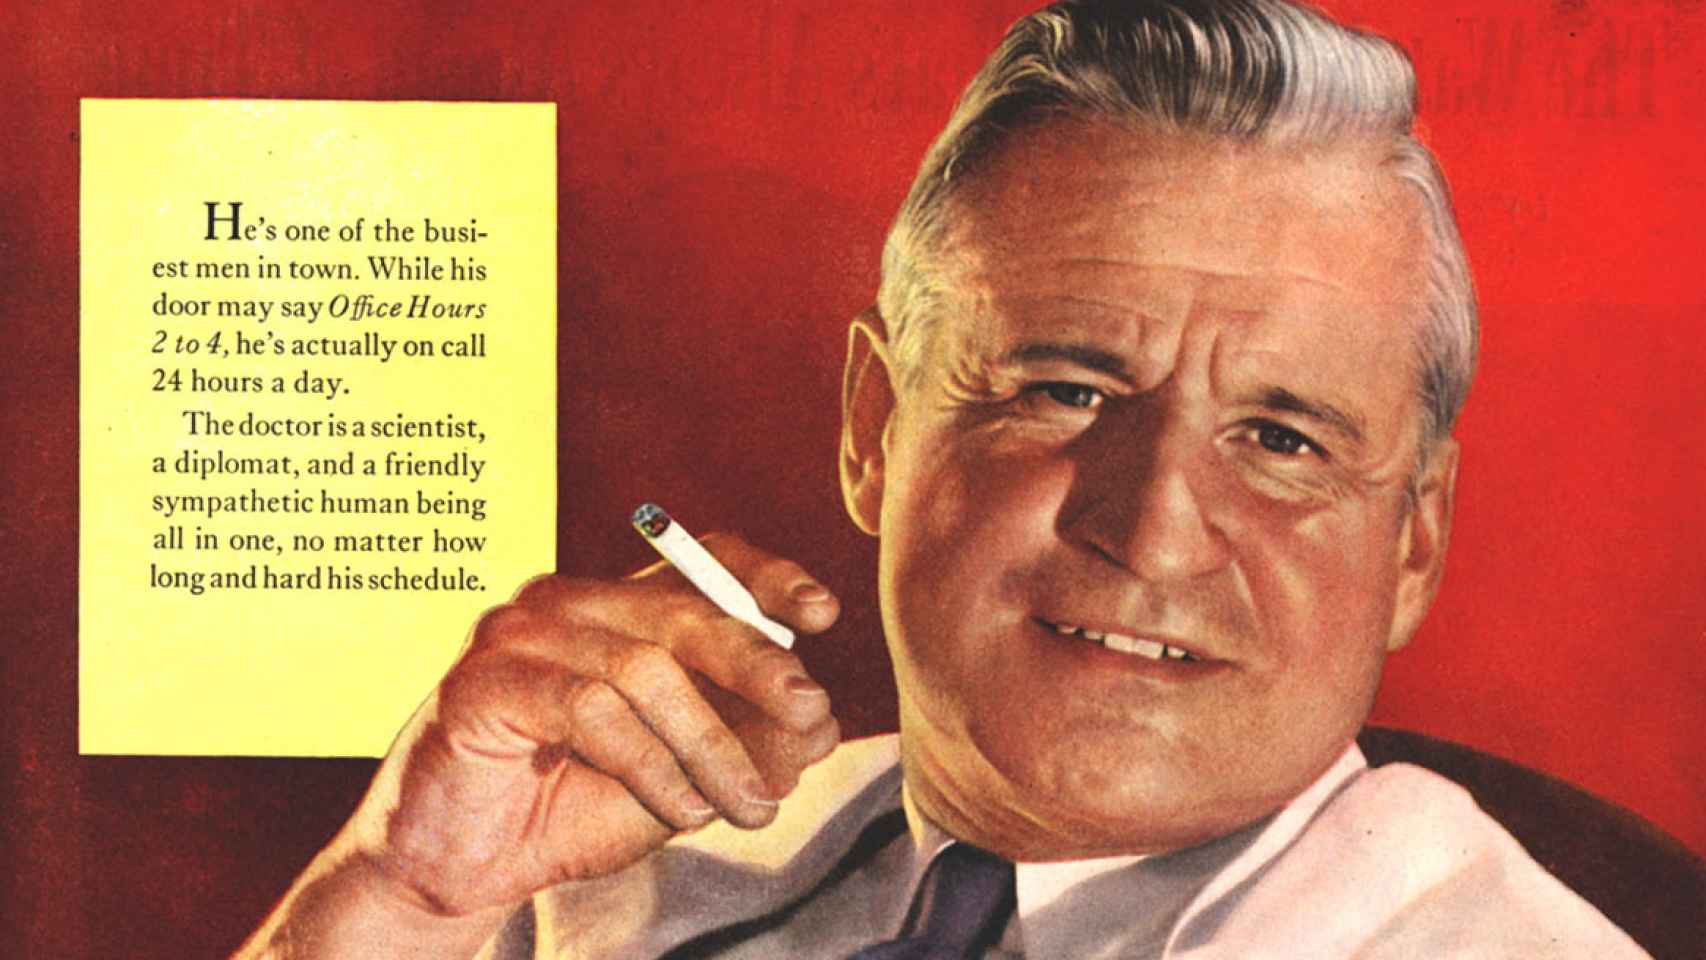 ¿Médicos anunciando tabaco? Sí, era la norma en los años 1950